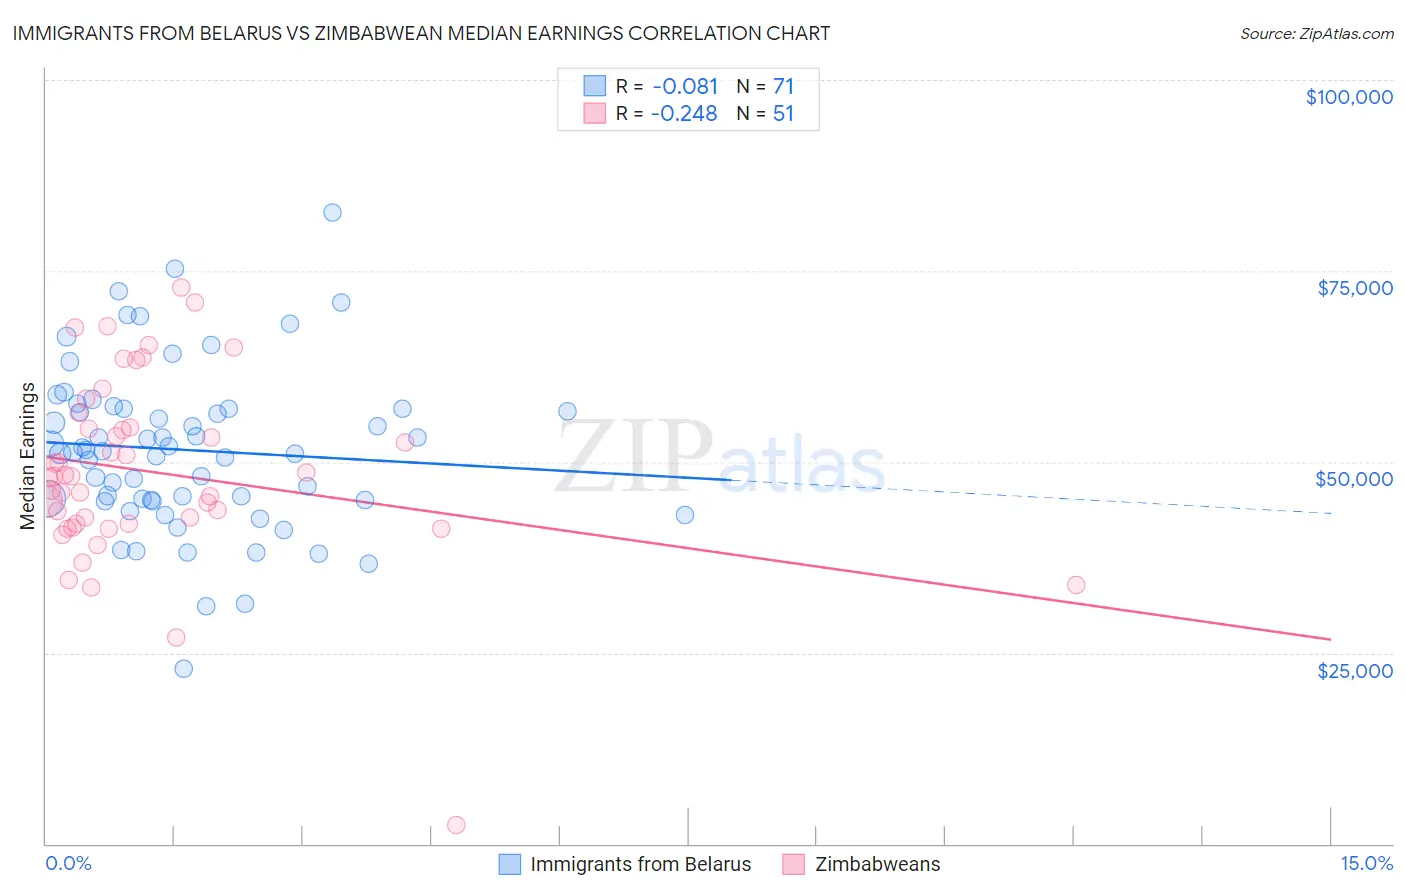 Immigrants from Belarus vs Zimbabwean Median Earnings